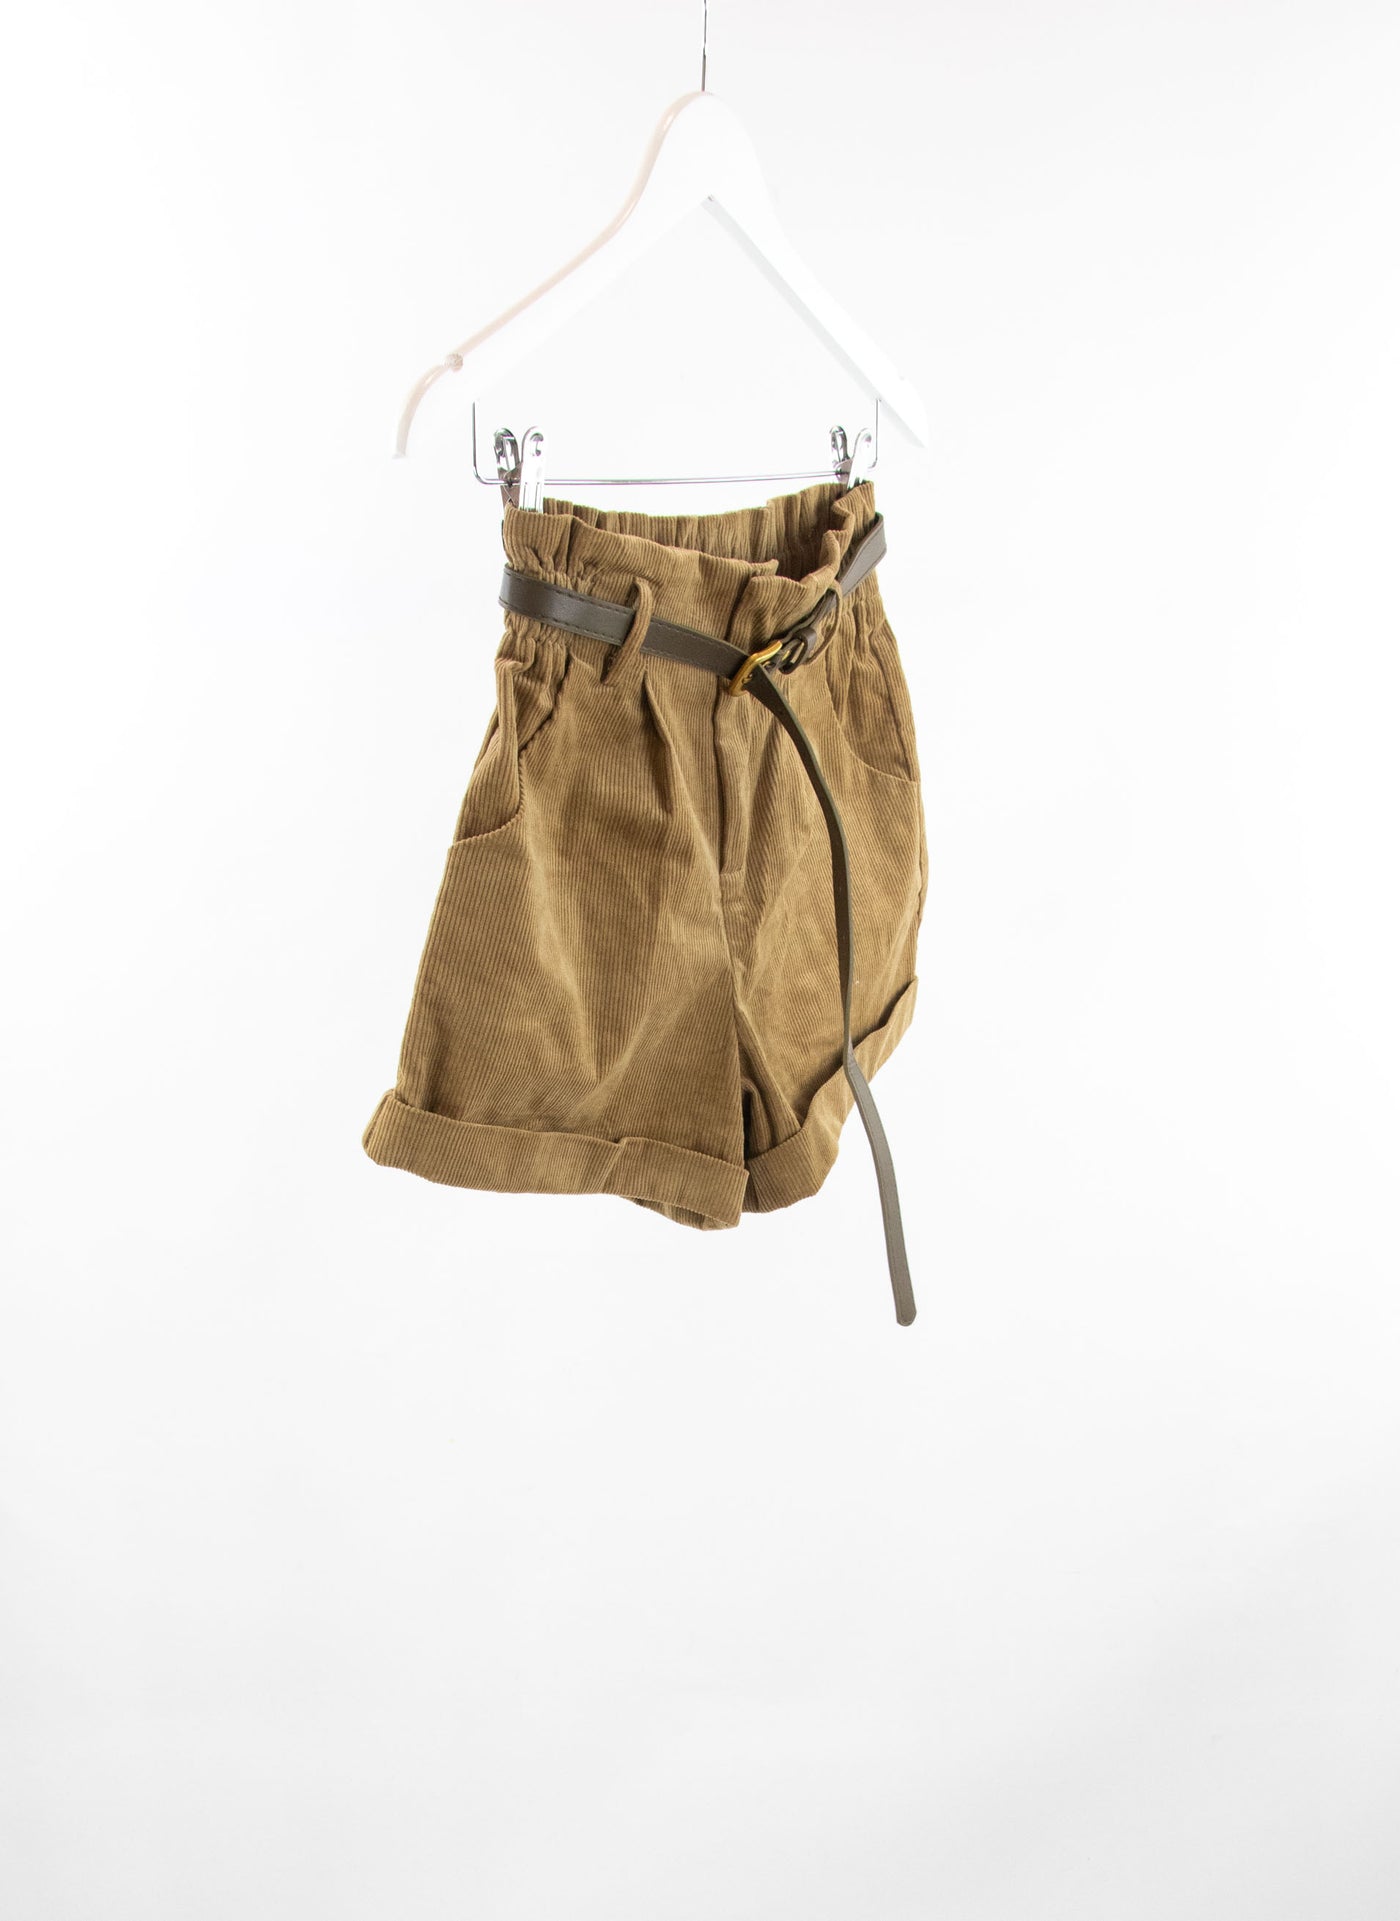 Pantalón corto marrón de pana